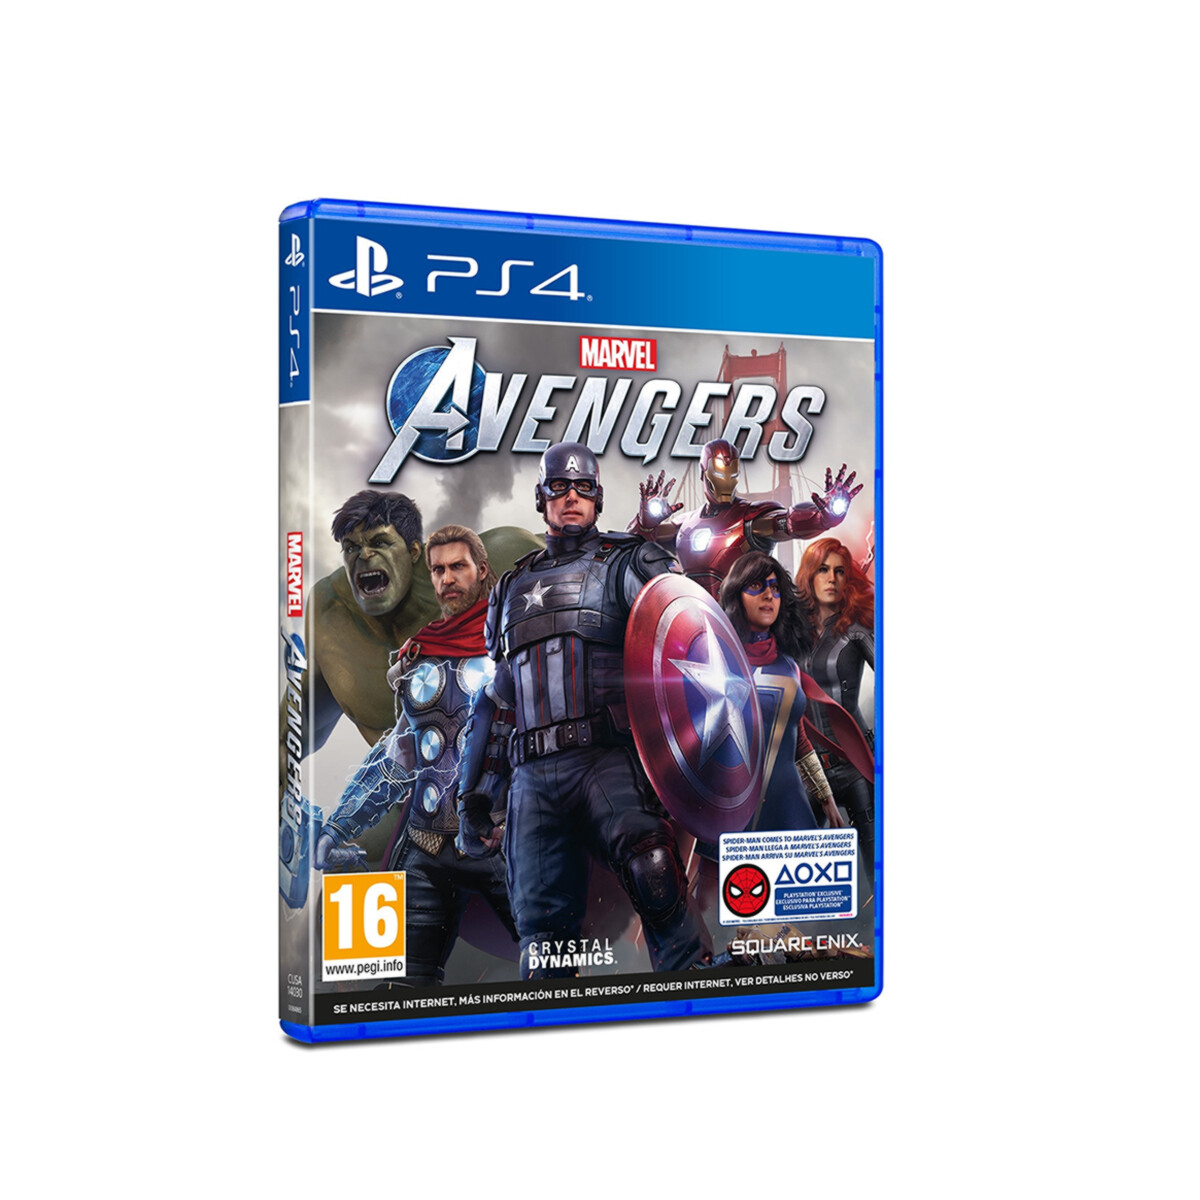 PS4 Marvel Avengers 